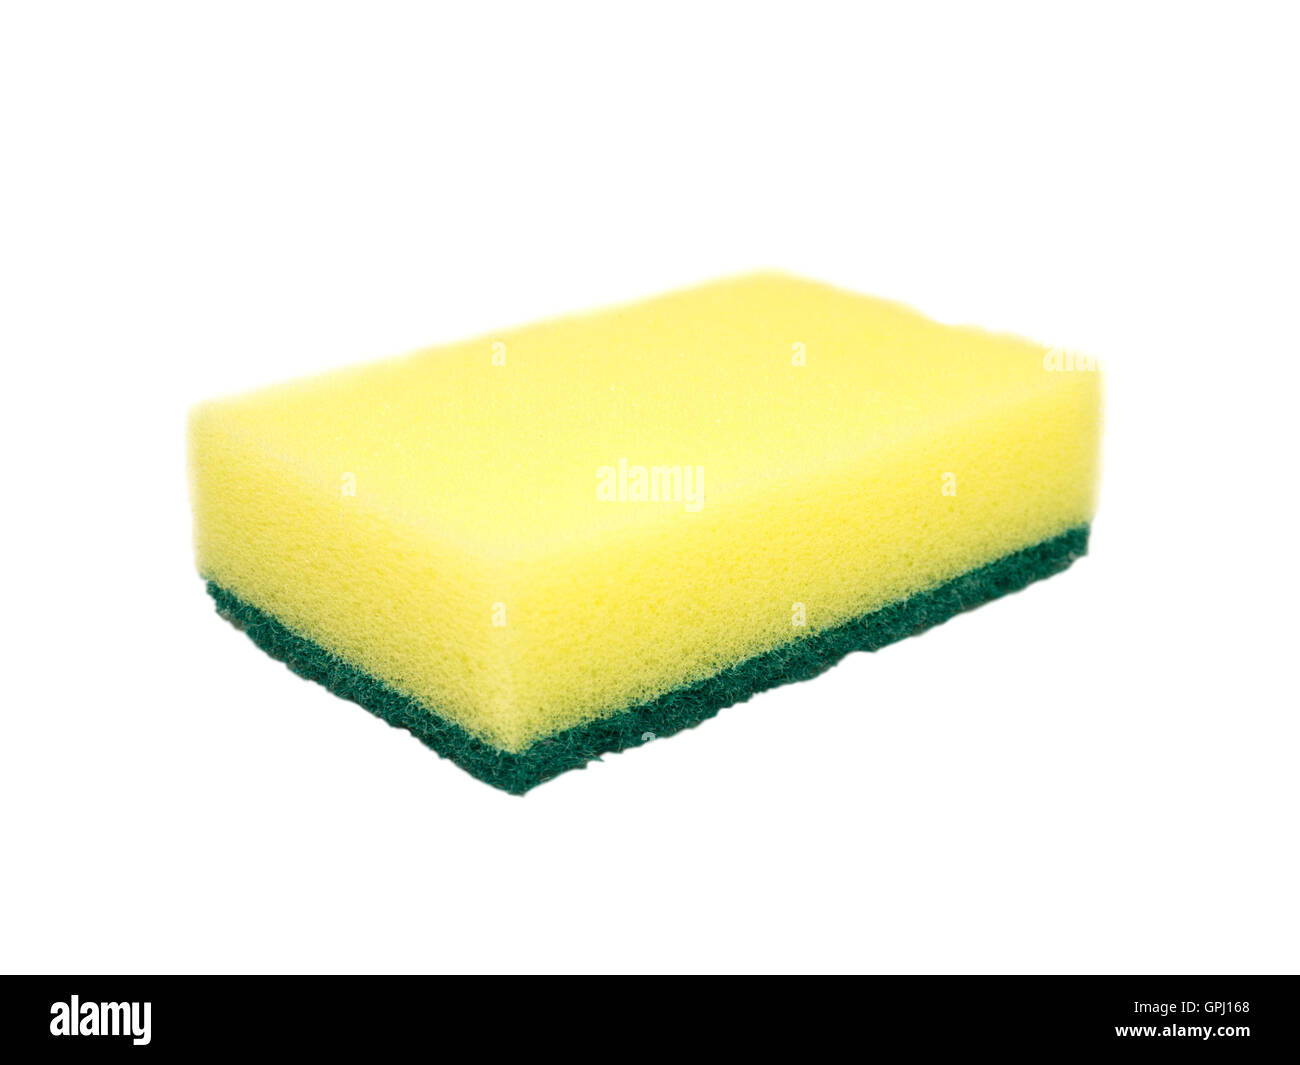 Yellow and green dishwashing sponge isolated on white Stock Photo